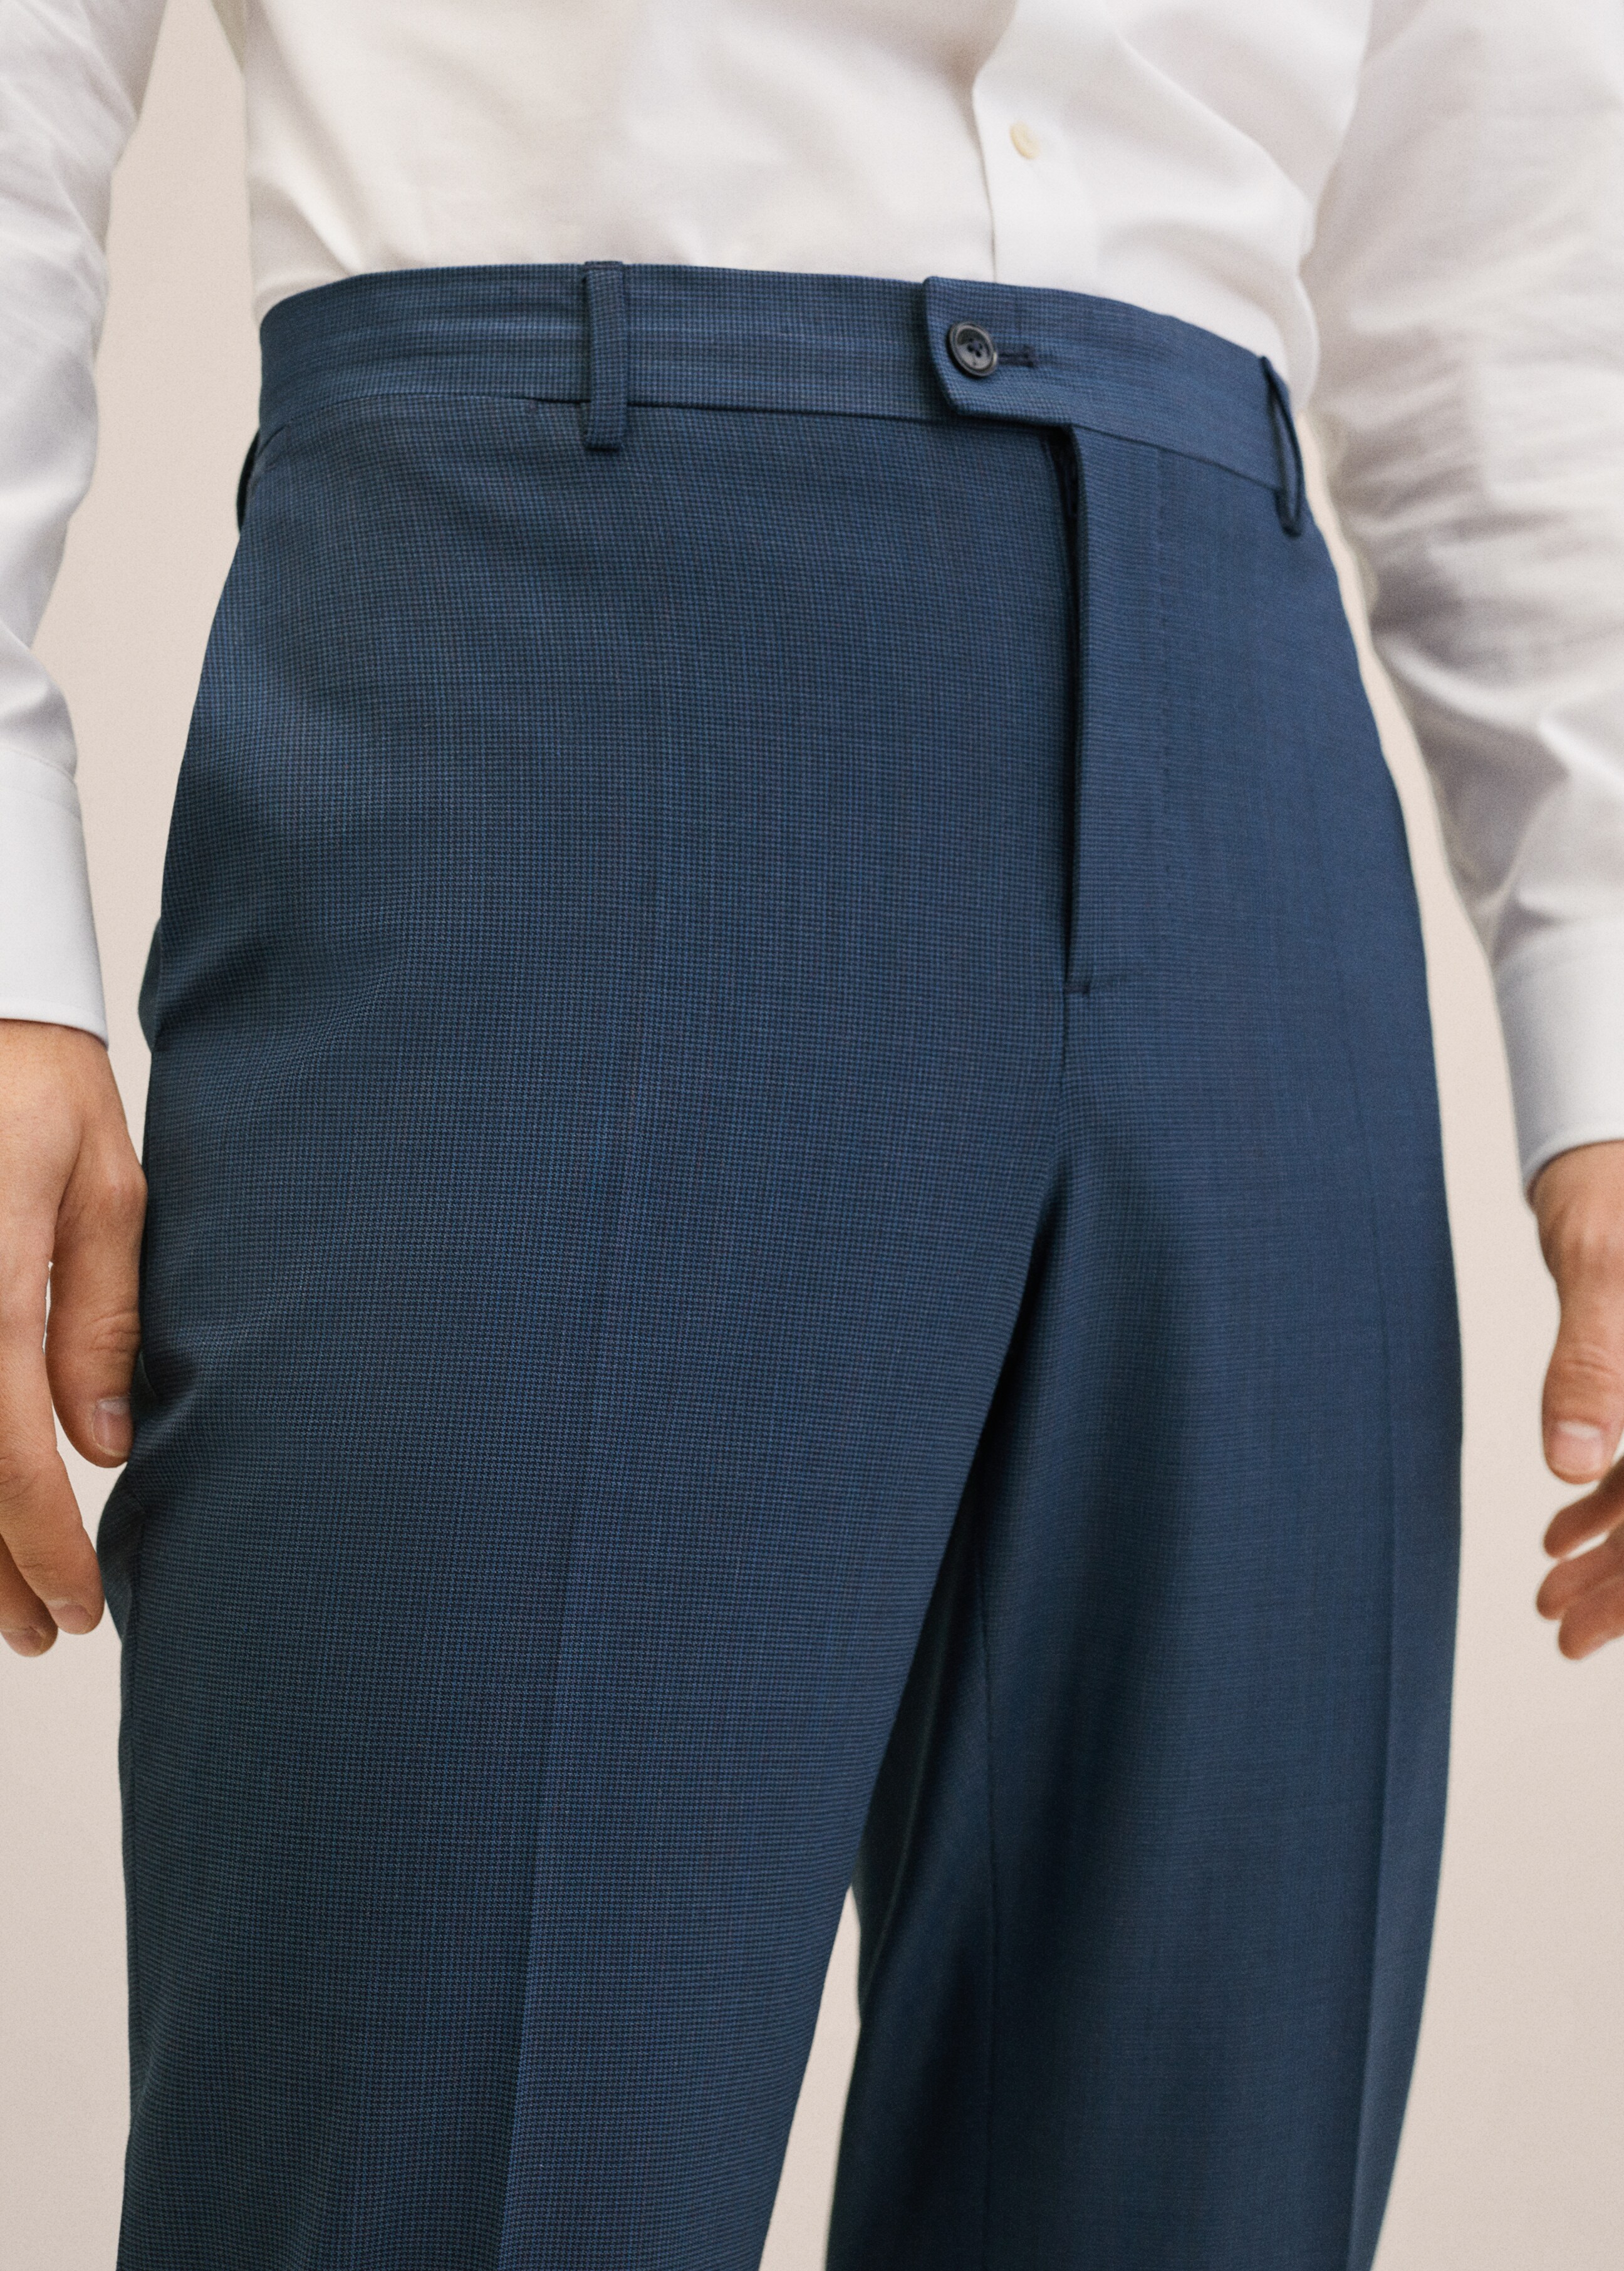 Pantalón traje slim fit lana - Detalle del artículo 1